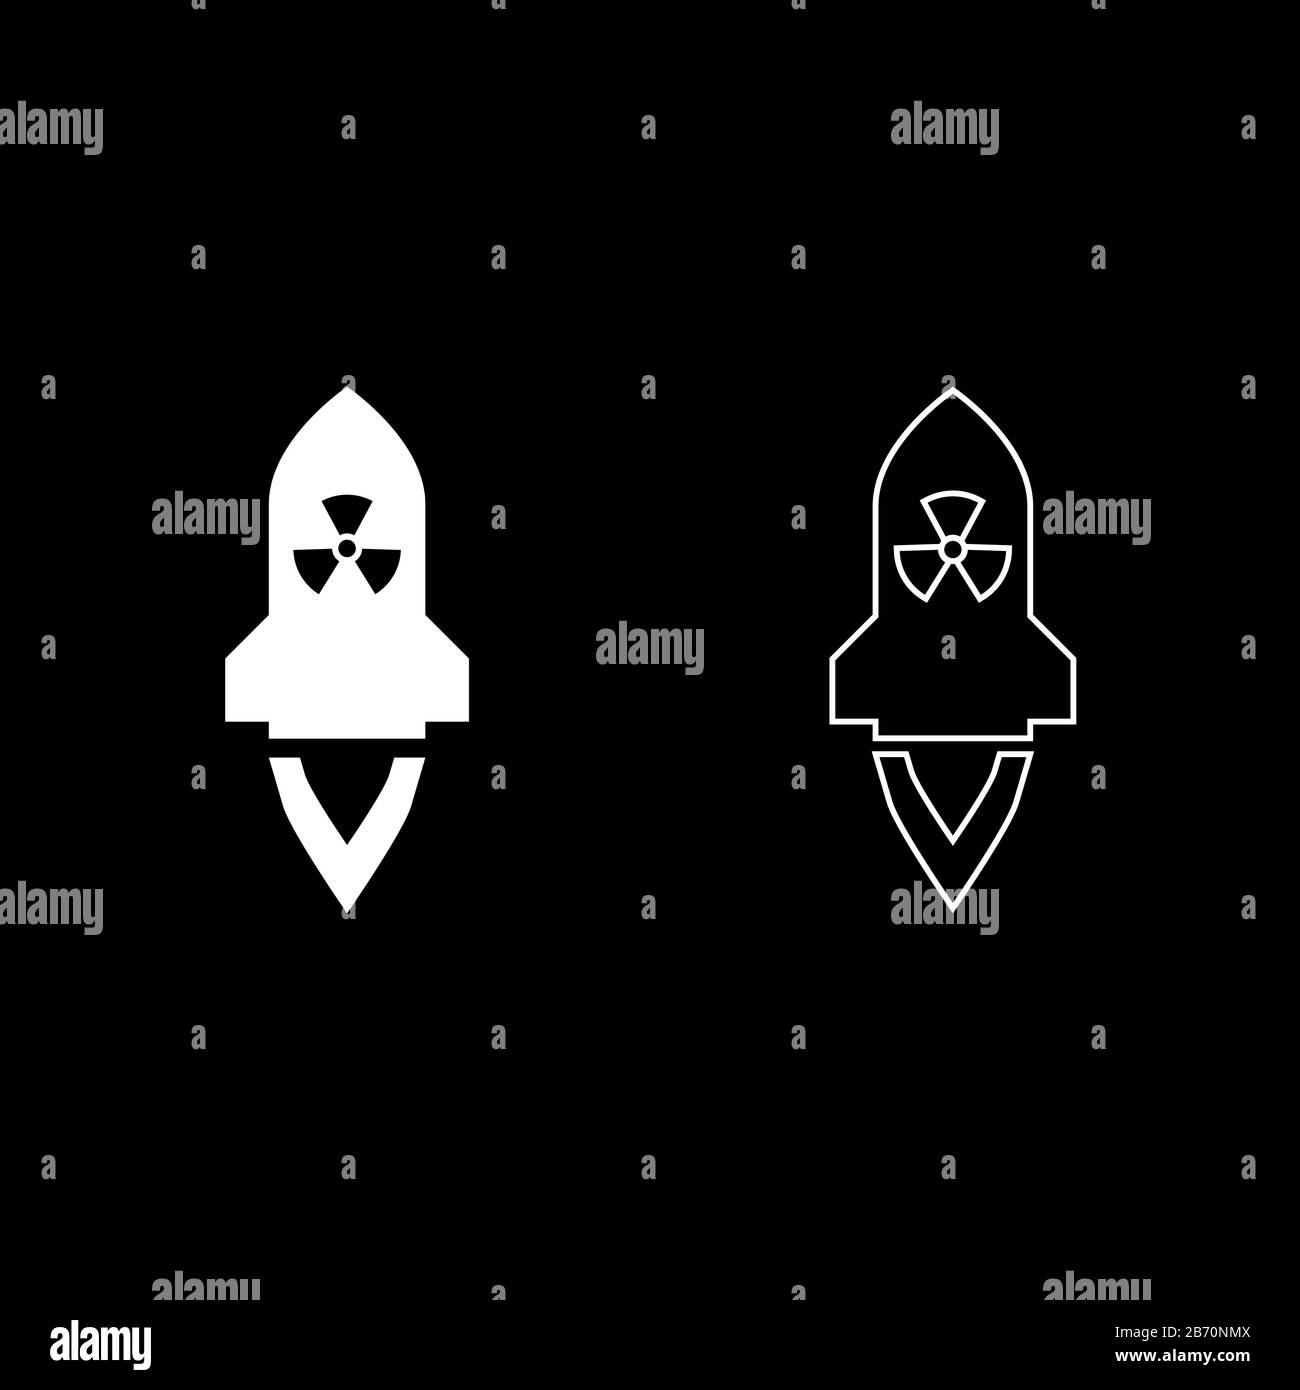 Missile atomique volant armes de missile nucléaire bombe radioactive concept militaire icône définir couleur blanche vecteur illustration plate style simple Illustration de Vecteur